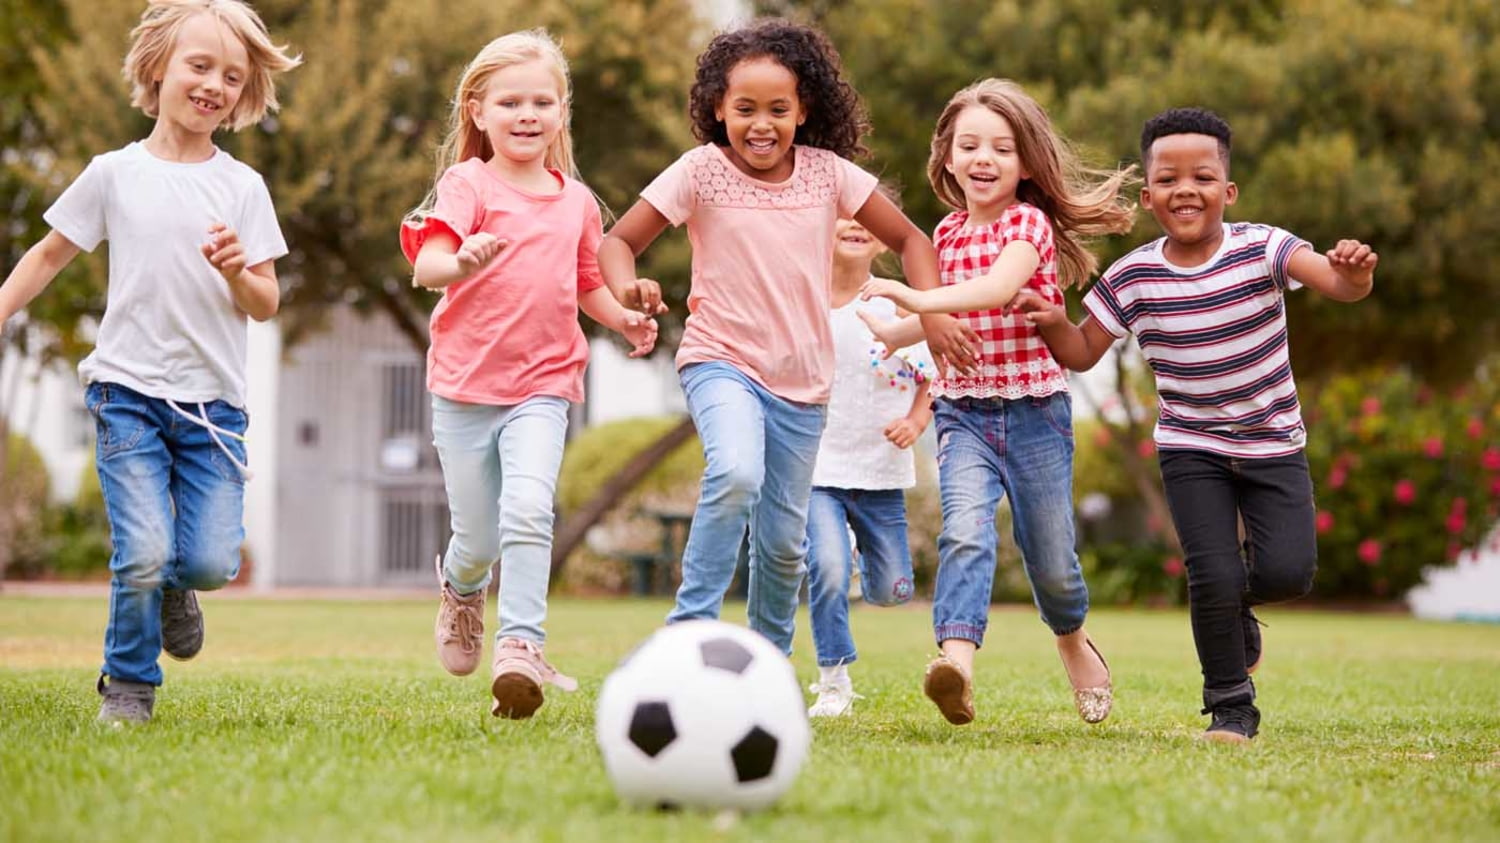 Sechs Kinder laufen lachend auf einen Fußball im Vordergrund zu